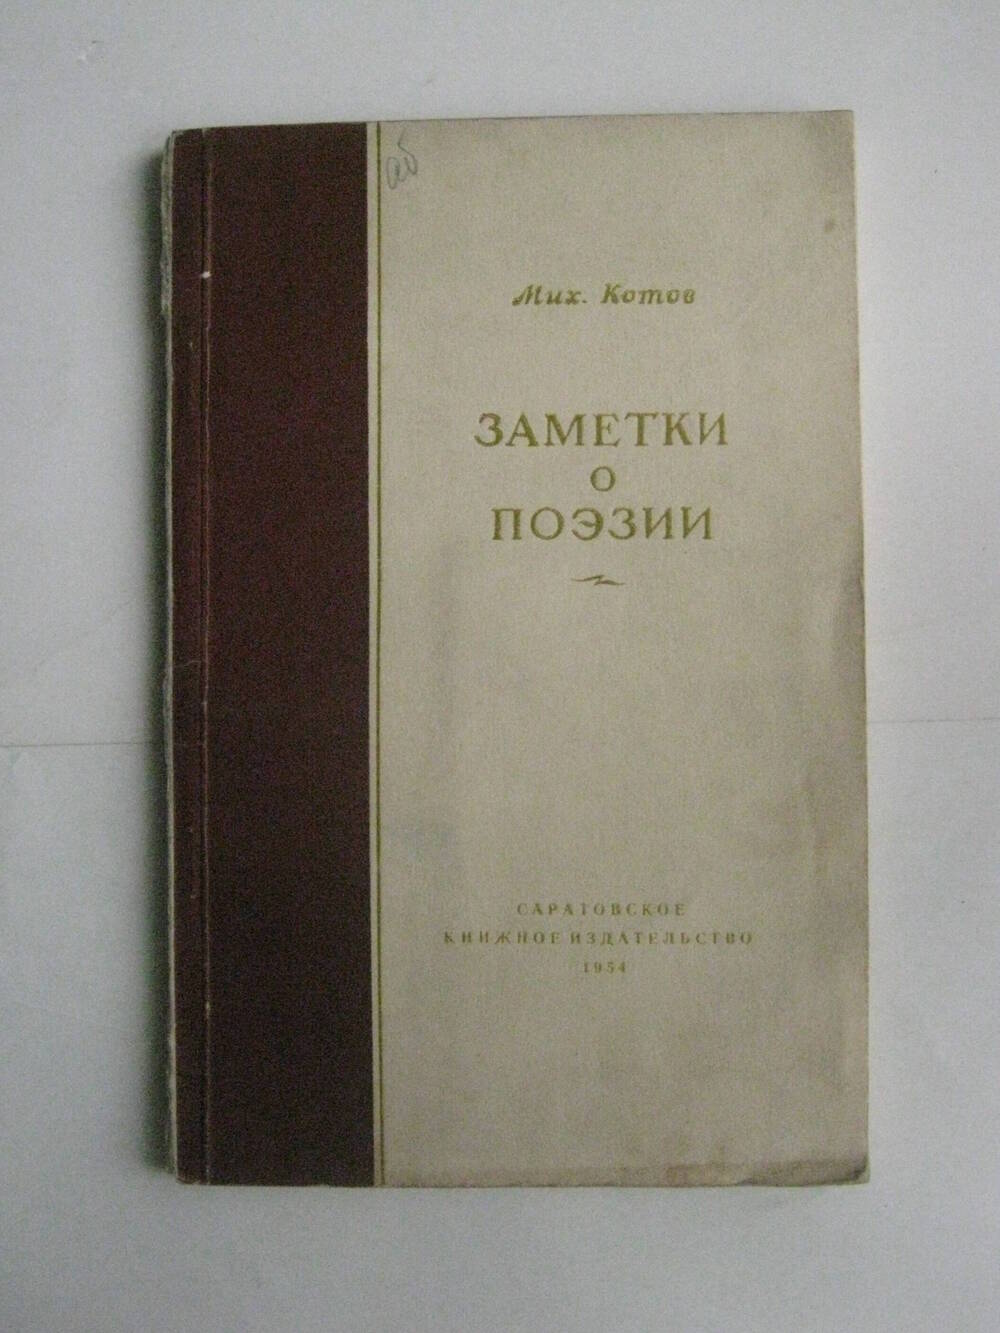 Книга. Котов М. Заметки о поэзии.-М.,1954.